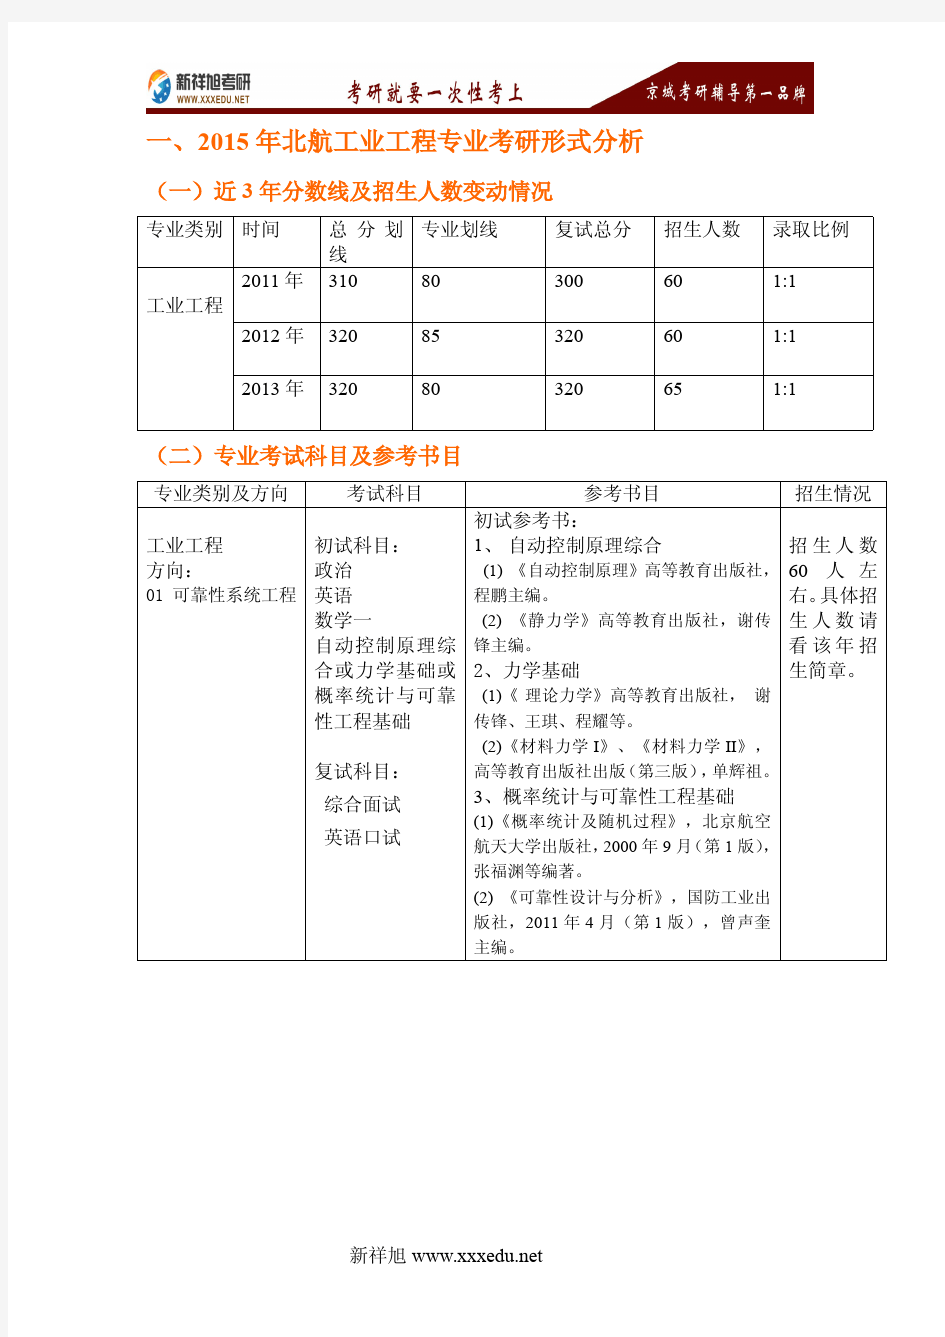 北京航空航天大学工业工程专业考研资料。